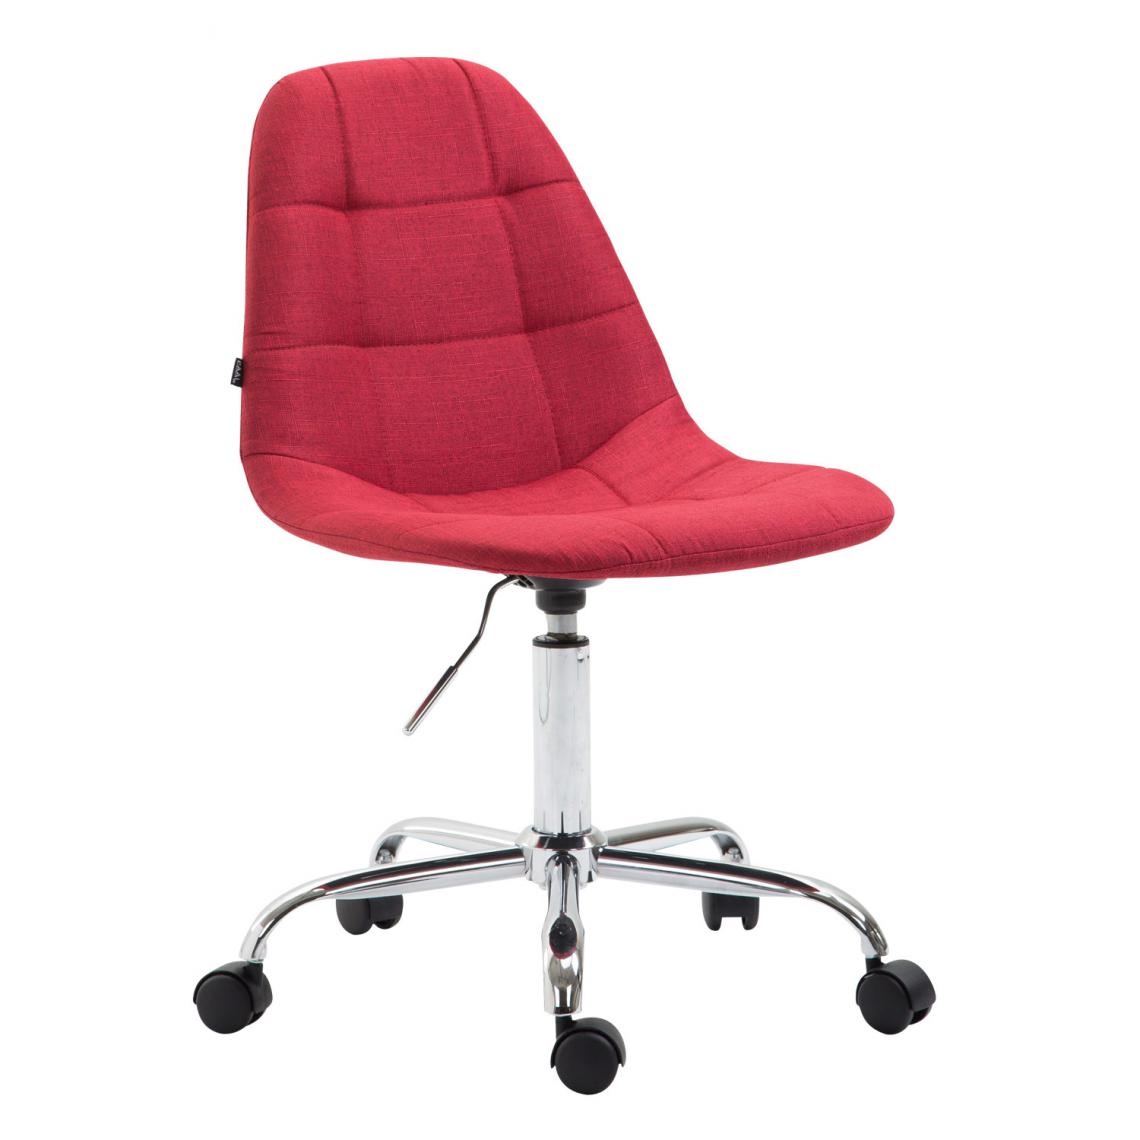 Icaverne - Joli Chaise de bureau tissu categorie Sucre couleur rouge - Chaises